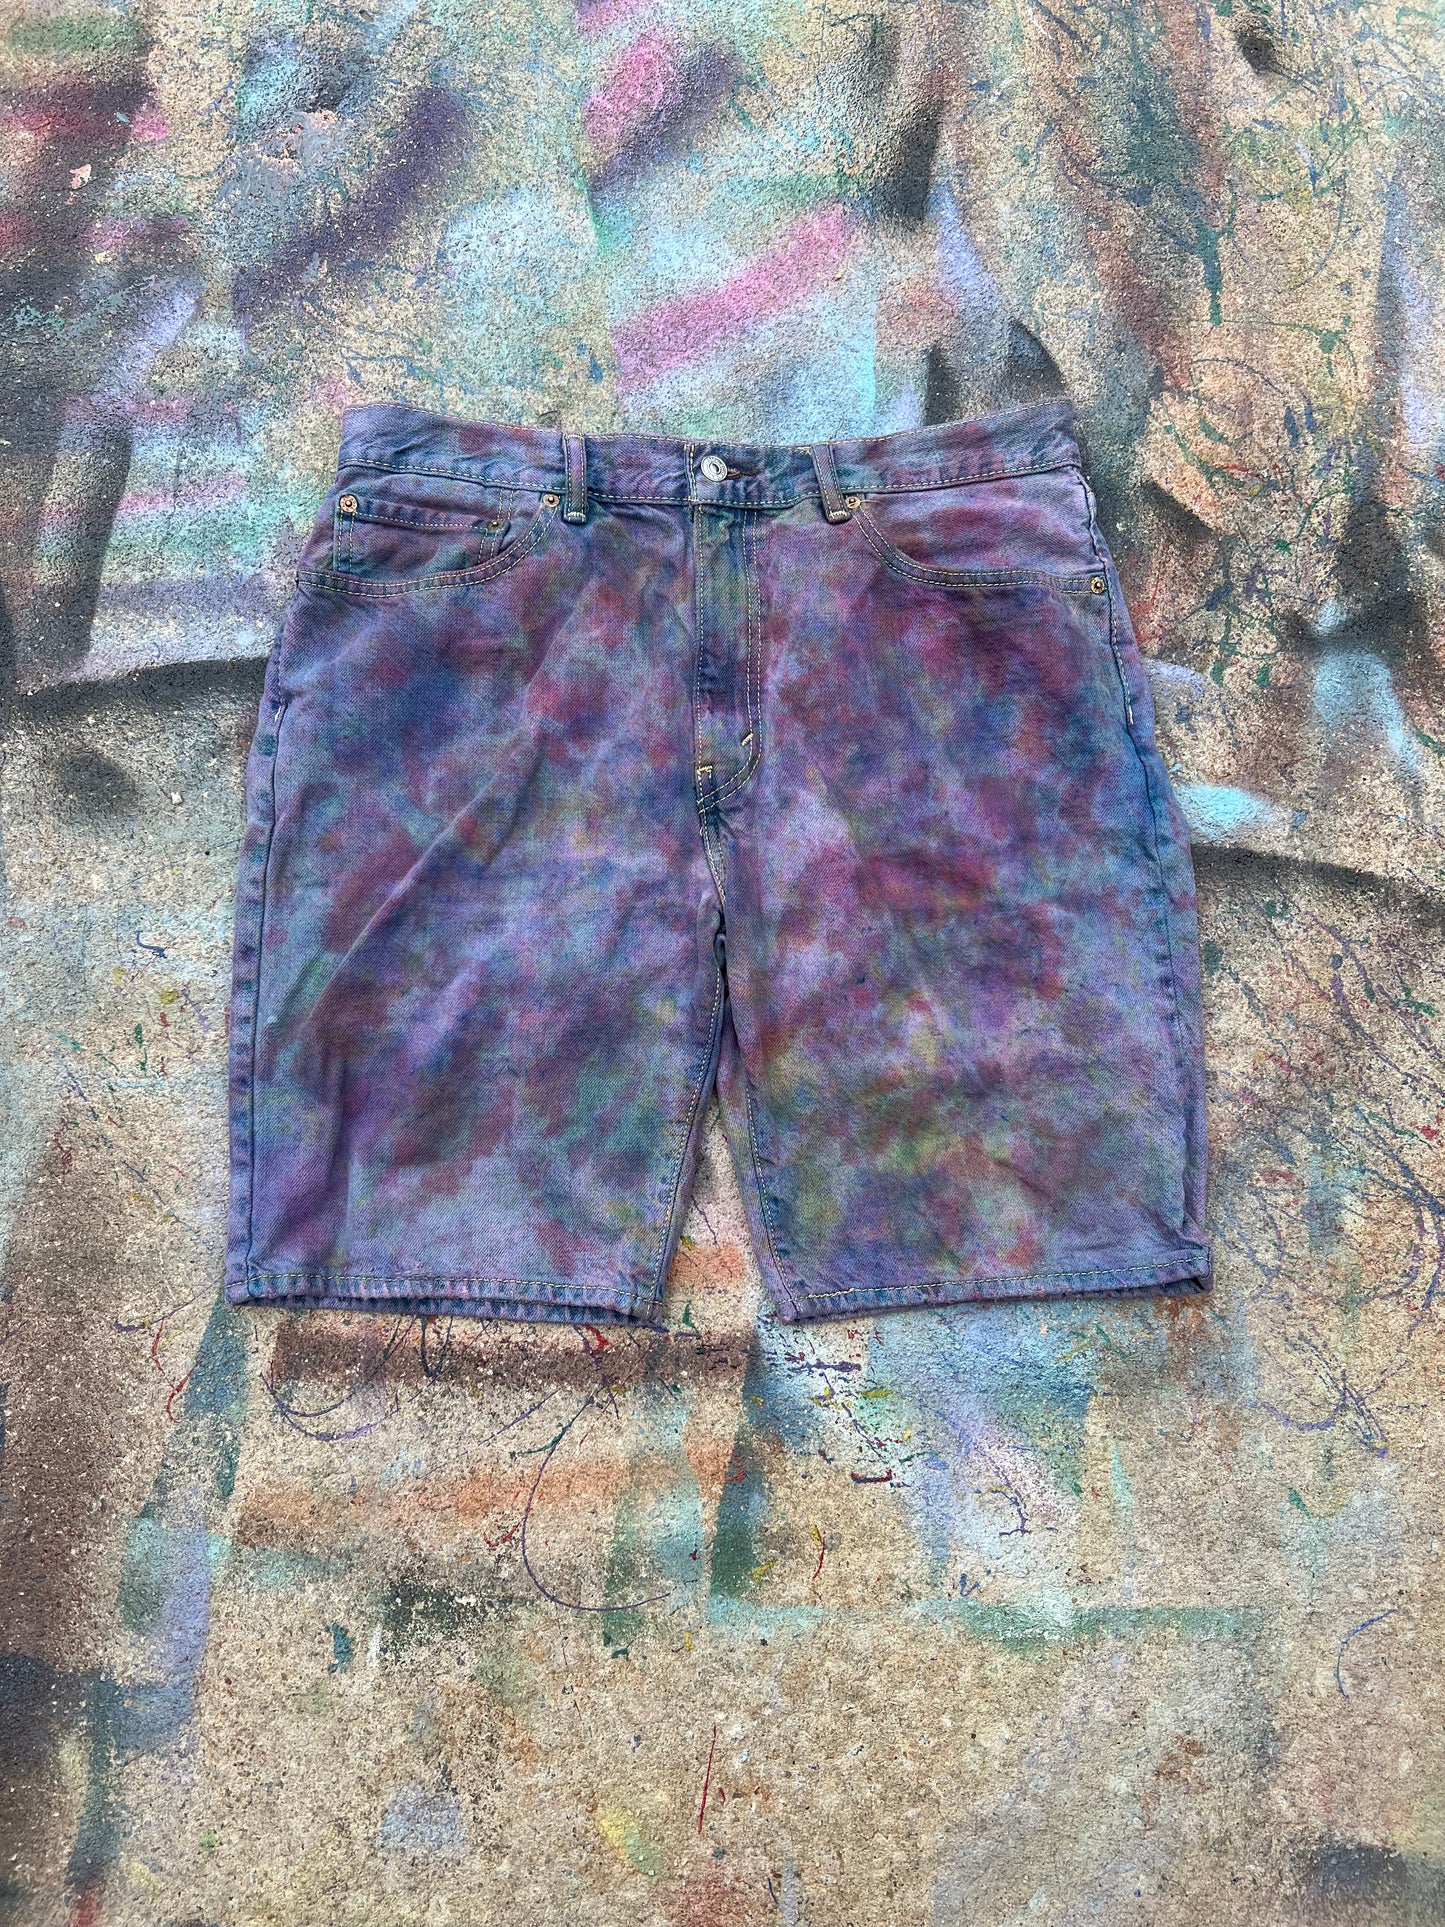 (LS) Tye Dye Jean Shorts #3 (Multicolor) - 36